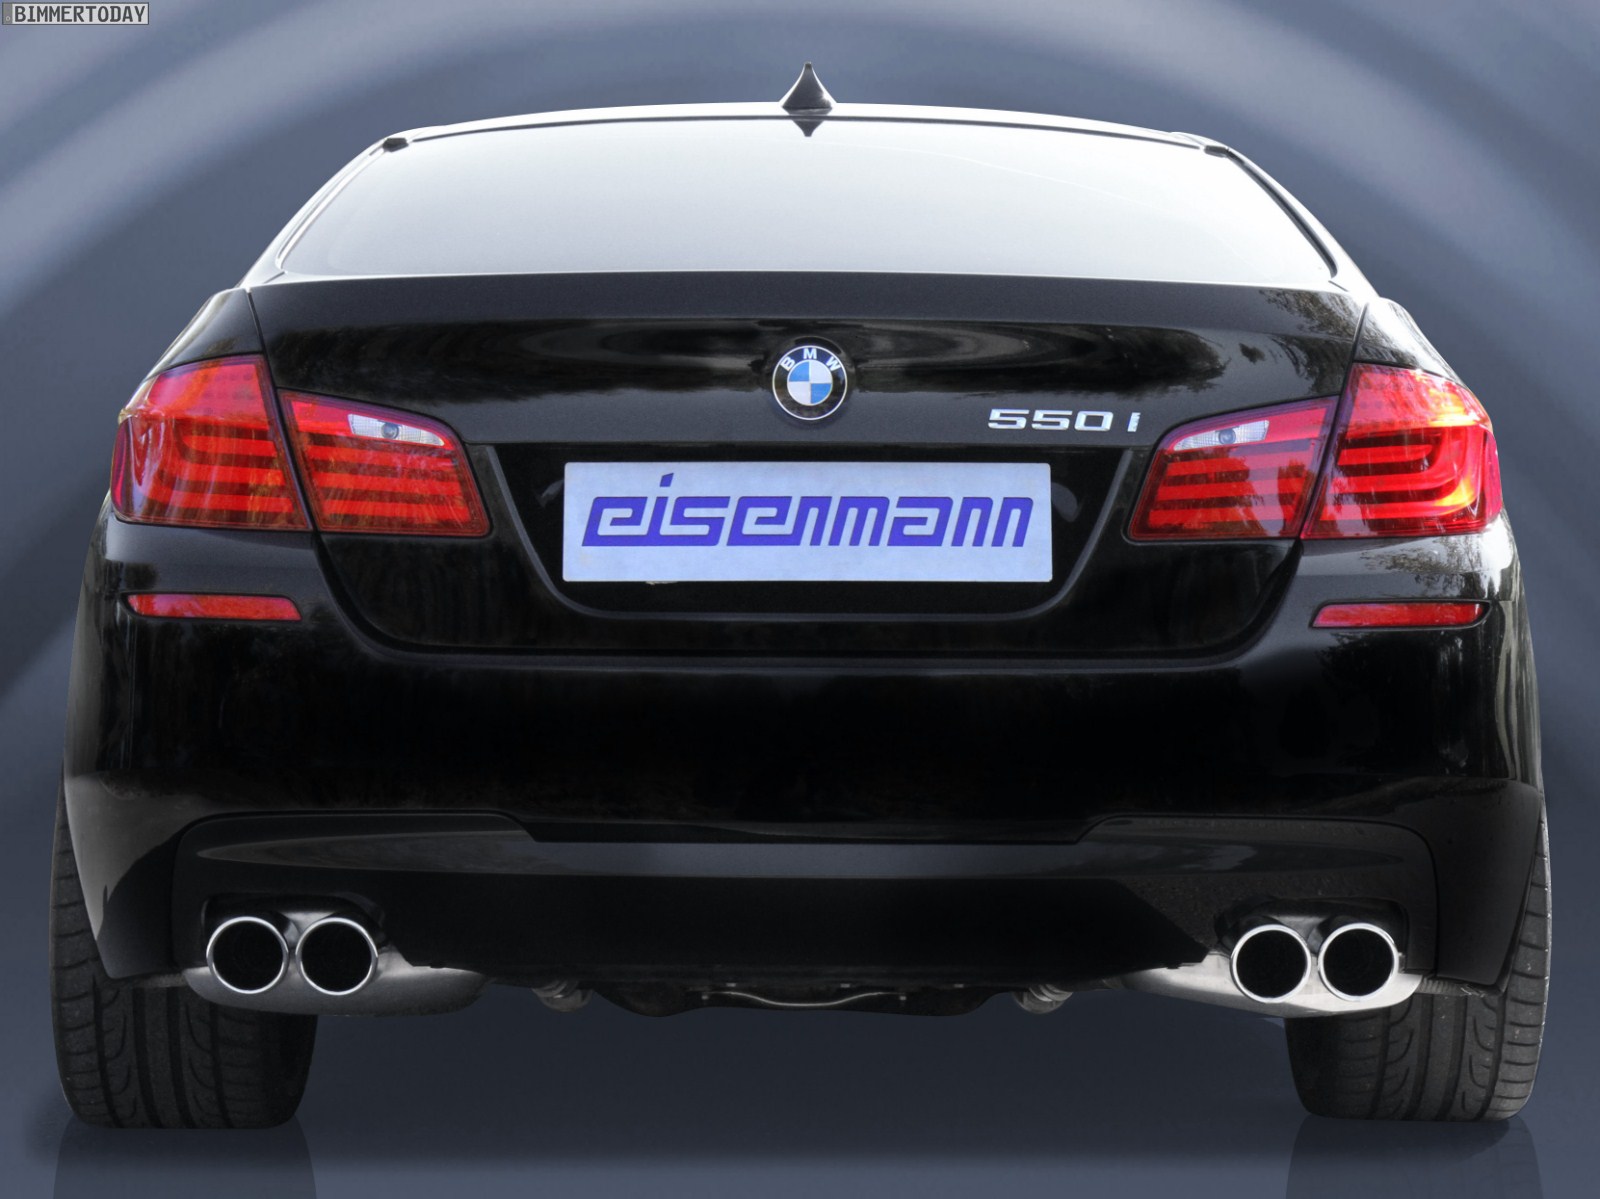 EdelstahlEndschalldämpfer von Eisenmann für den BMW 550i F10